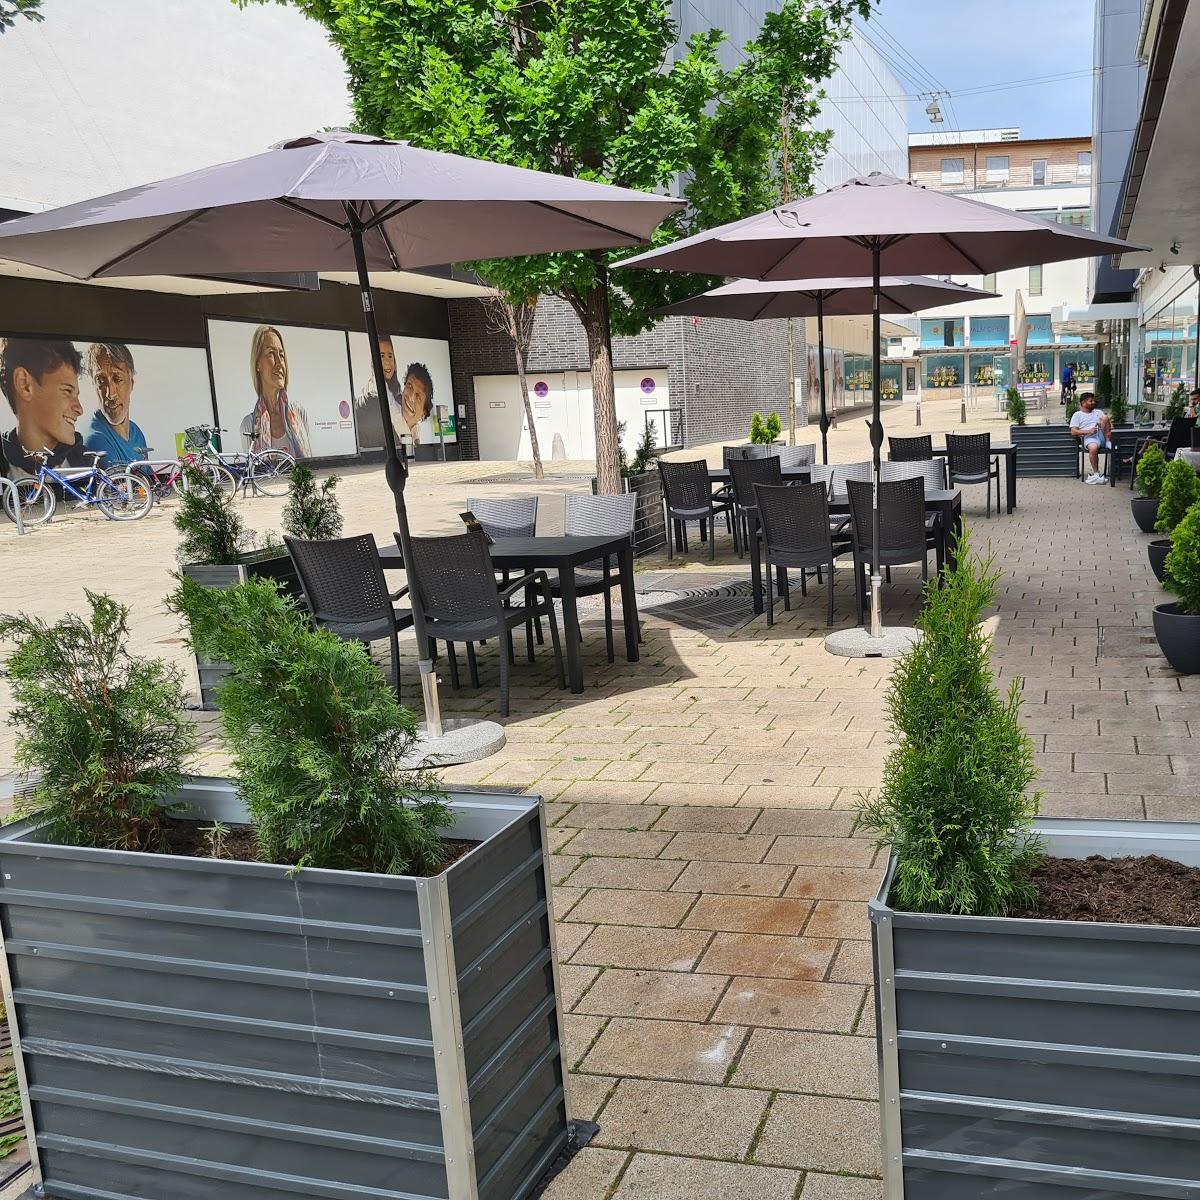 Restaurant "Dubai Restaurant" in Heilbronn